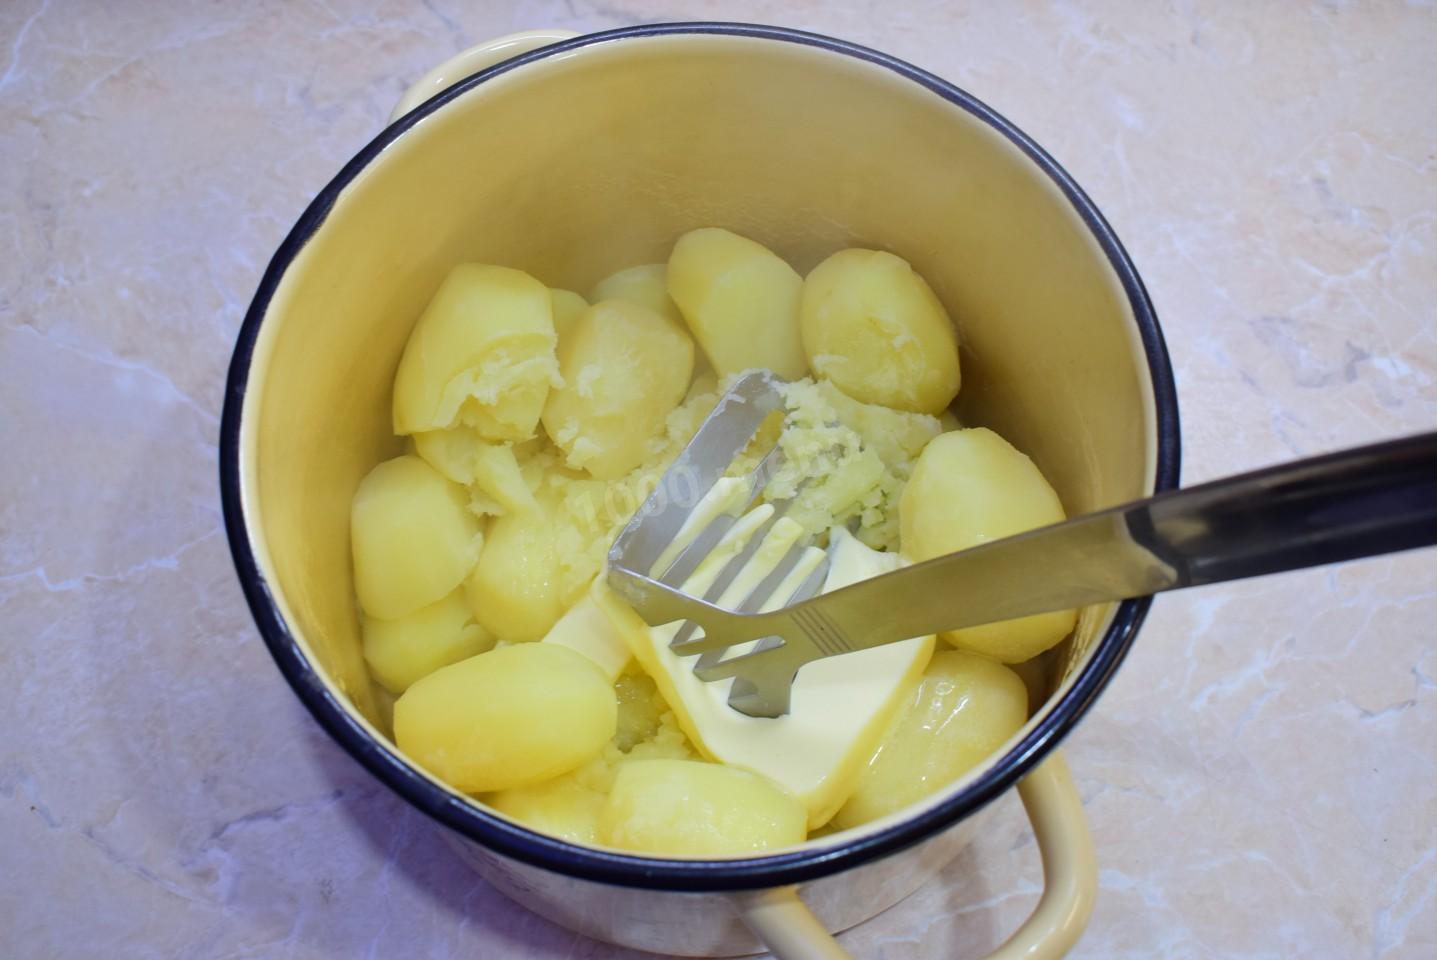 Сколько варить картошку очищенную после закипания. Пирожки из картошки пюре на сковороде. Свечи из картофеля. Швильпикай из картофеля. Каша чистит картошку.